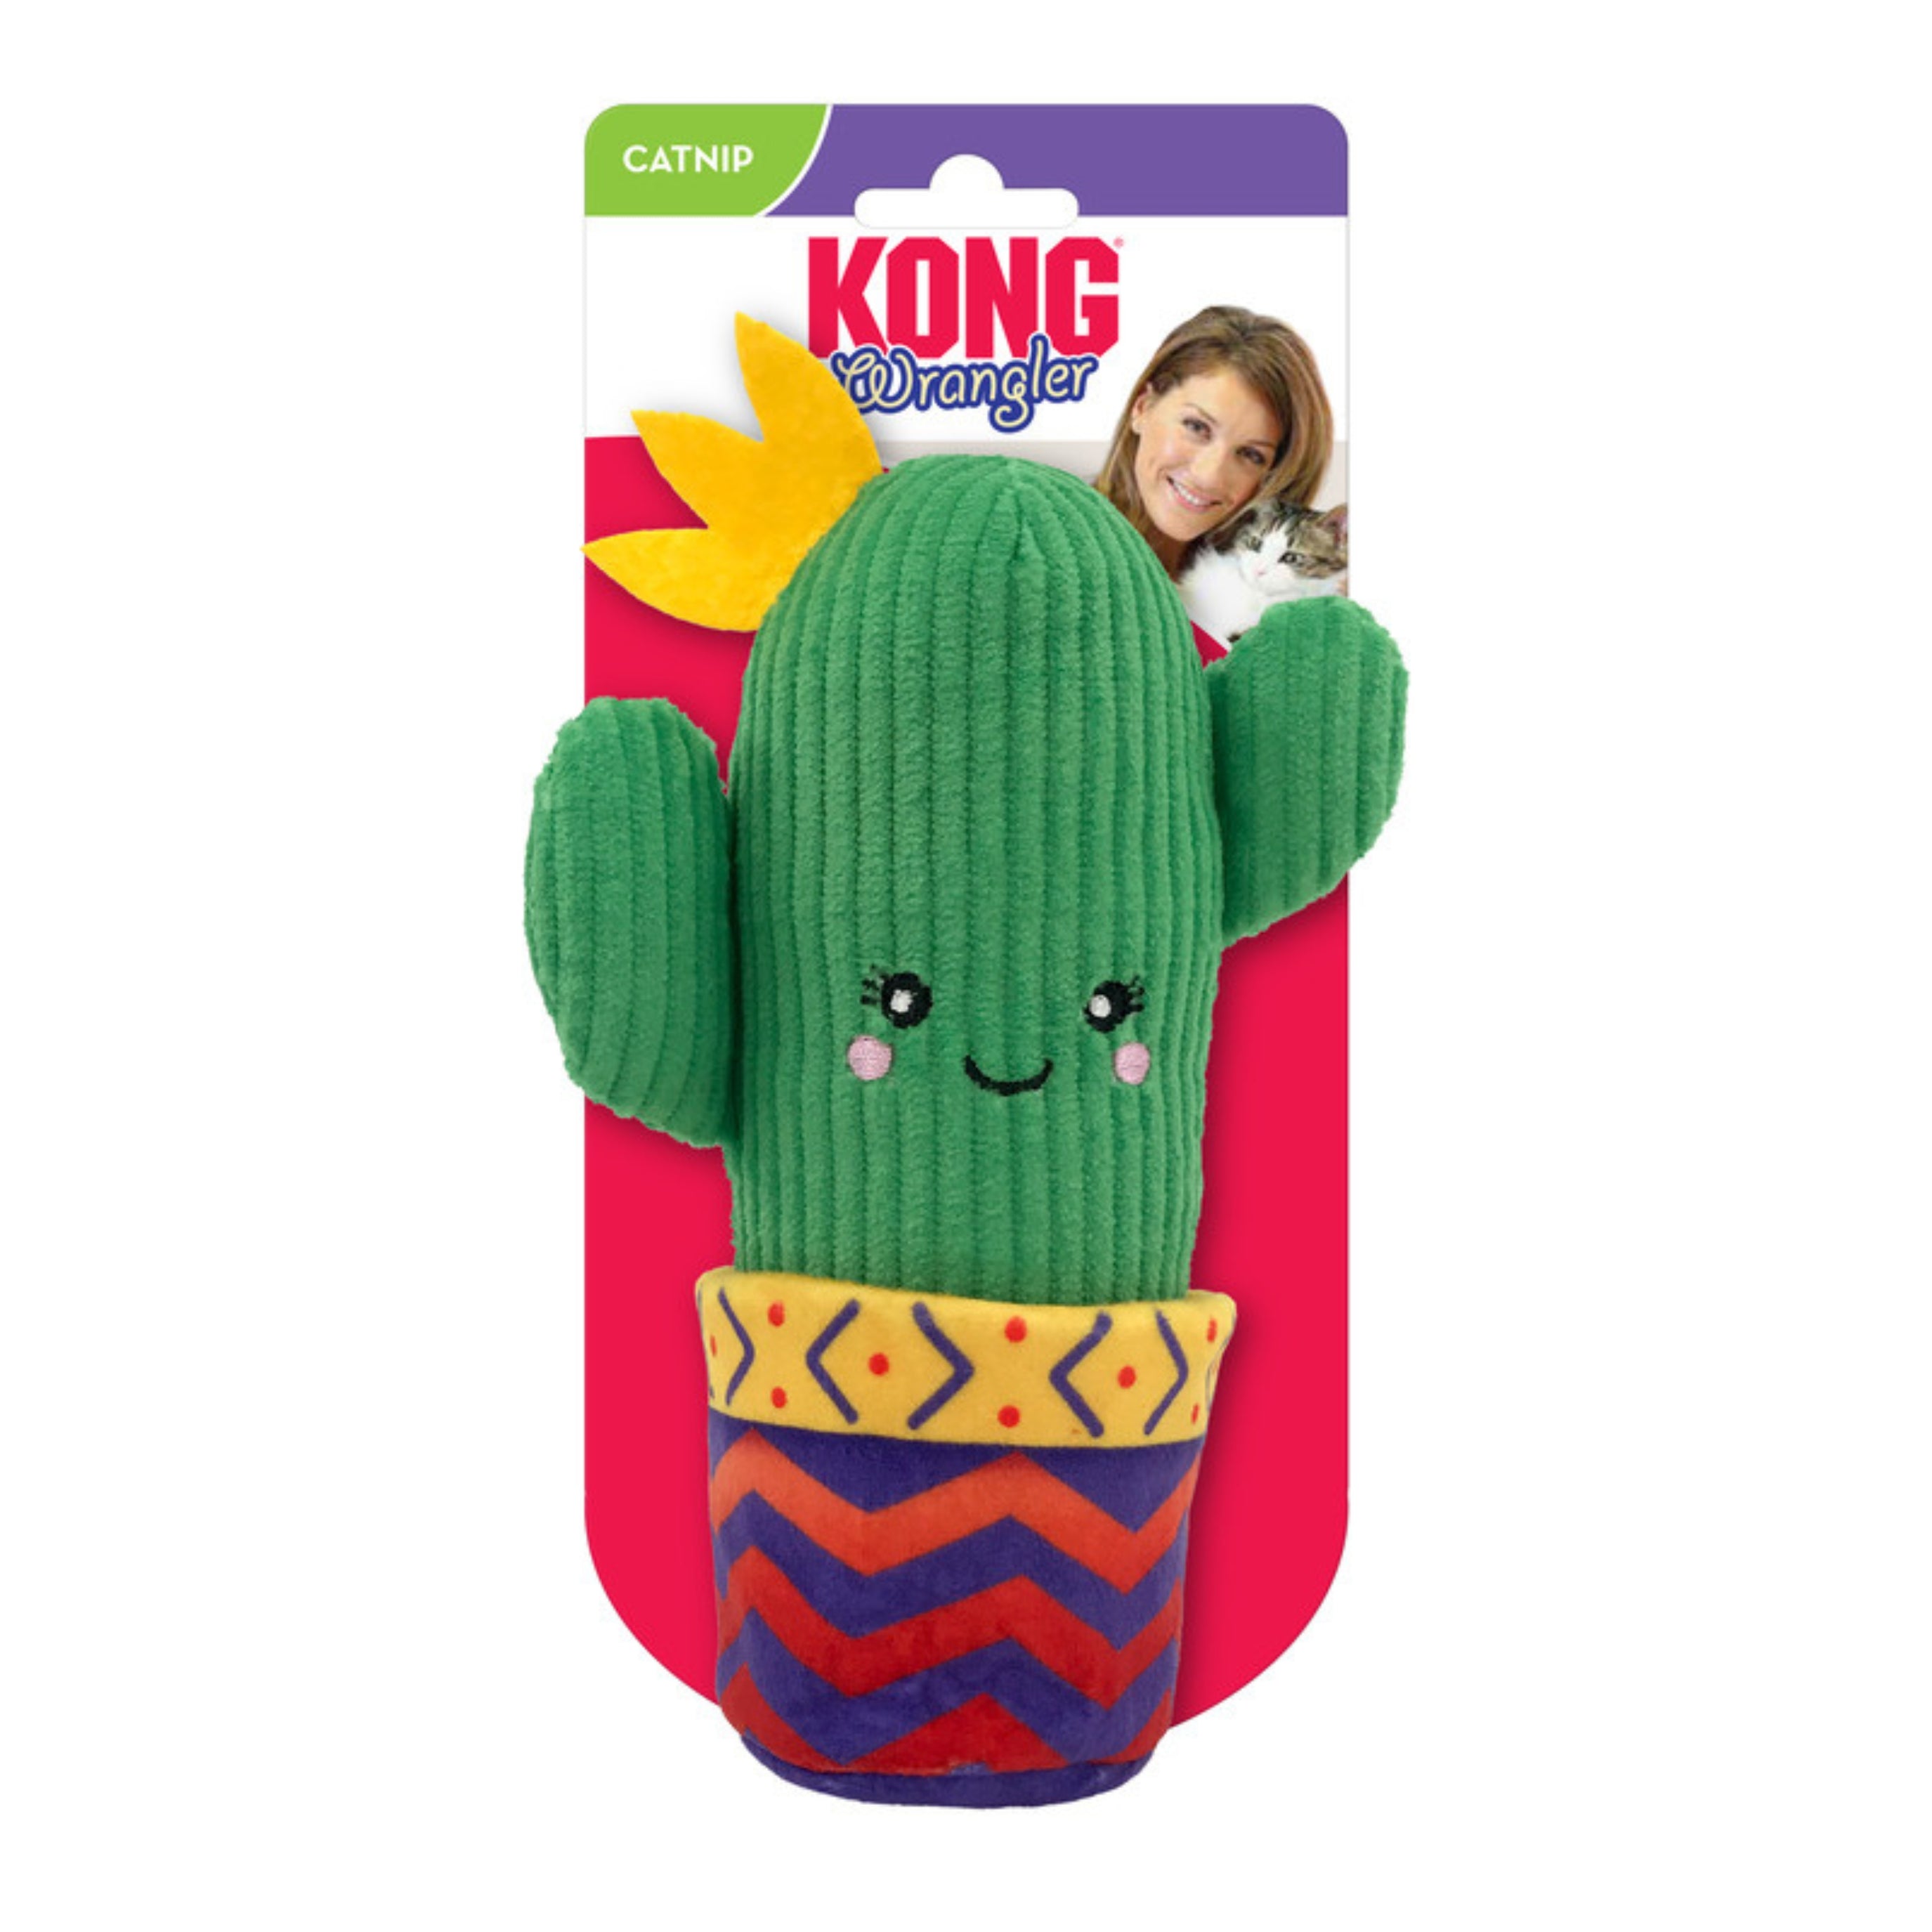 Interactive cat toy - KONG Wrangler Cactus